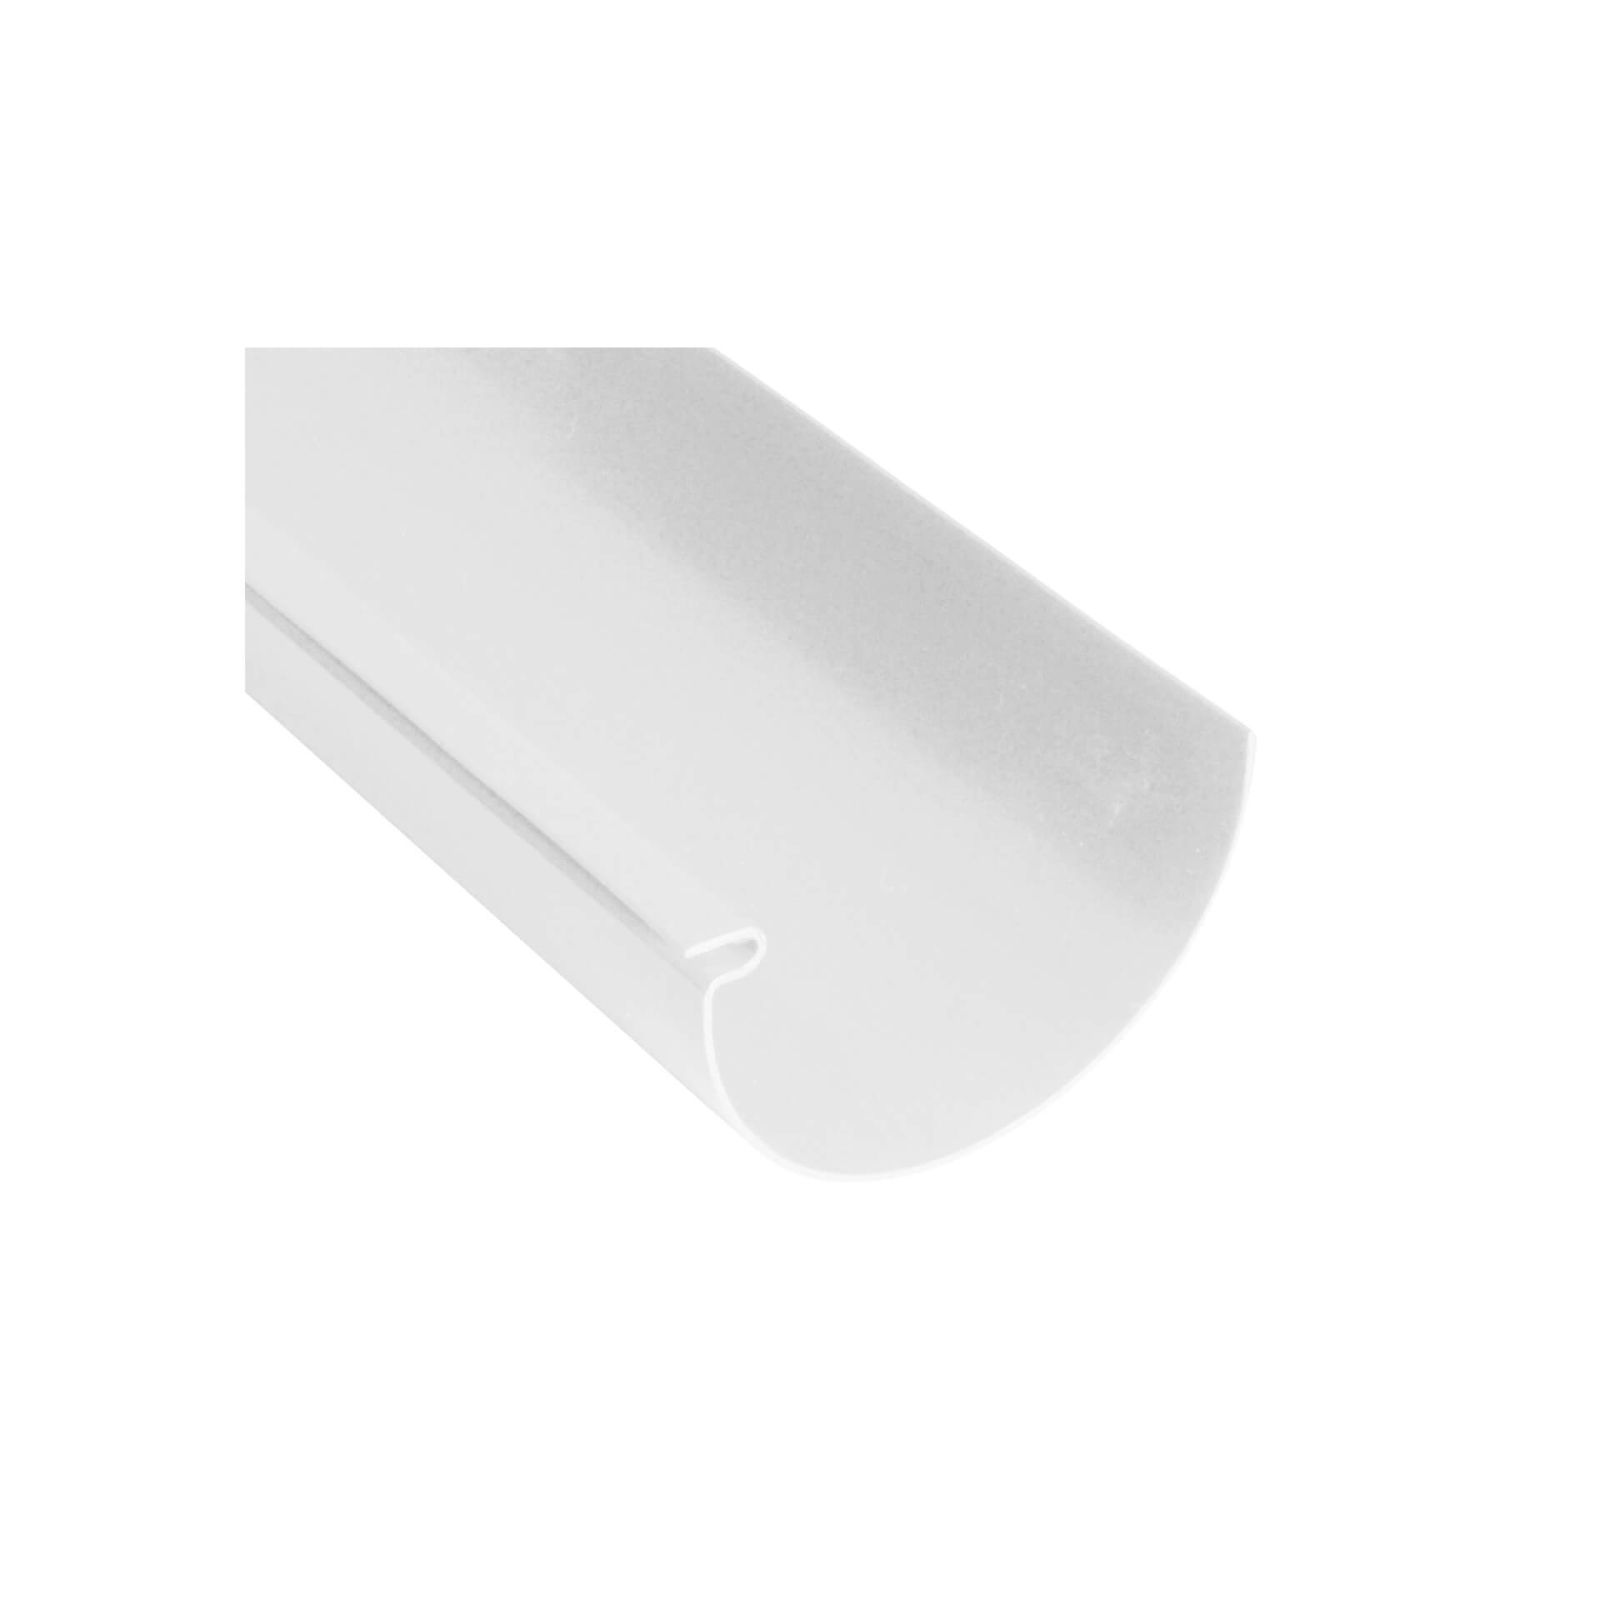 Kunststoff Dachrinnen Sparpaket 10 m | Ø 150/110 mm | Farbe Weiß